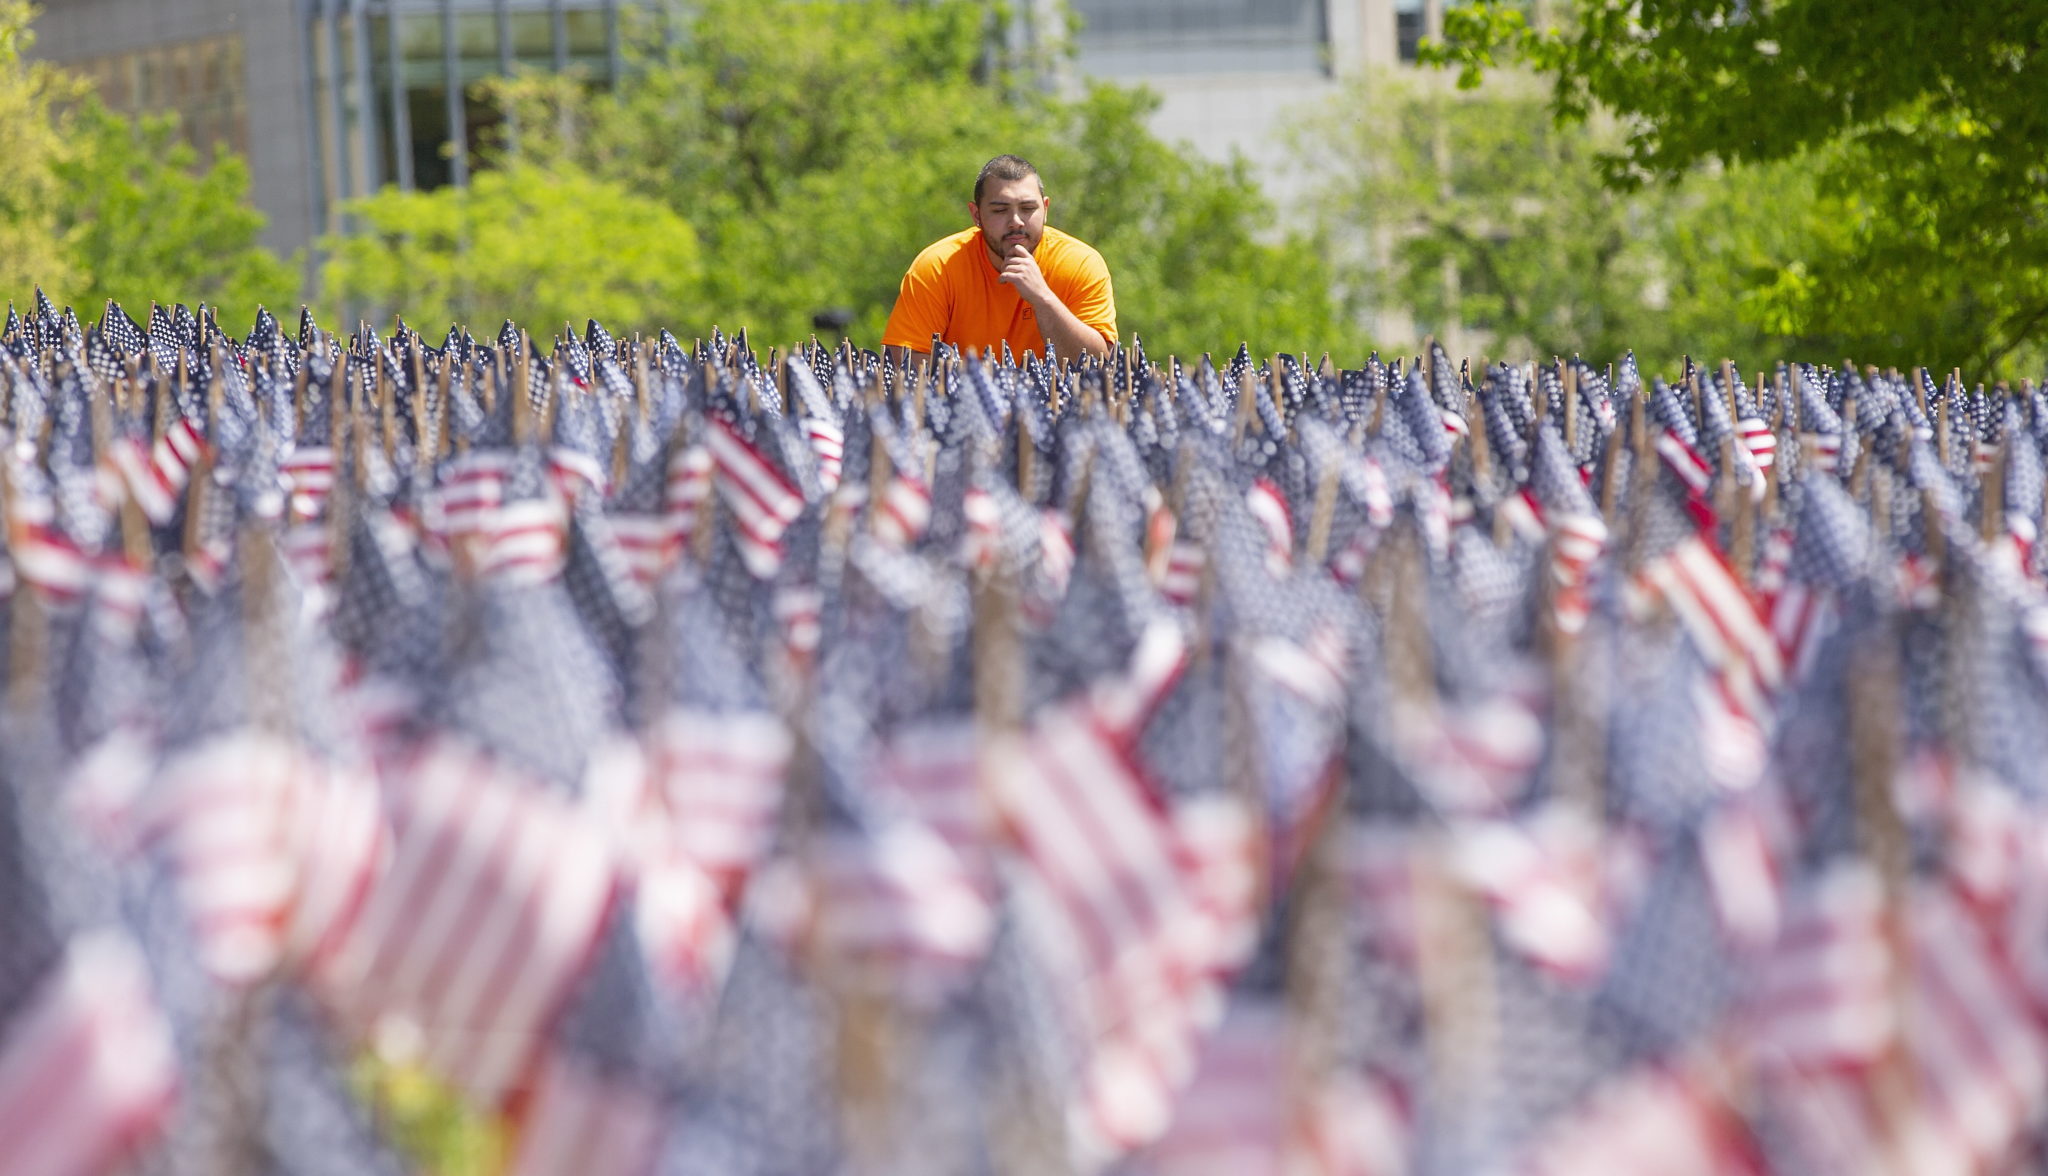 Każda z flag zasadzonych w pobliżu Pomnika Żołnierzy i Marynarzy na najstarszym w kraju publiczny park, reprezentuje członka służby Massachusetts, który oddał swoje życie w obronie Stanów Zjednoczonych od czasów wojny o niepodległość fot. CJ GUNTHER, EPA.